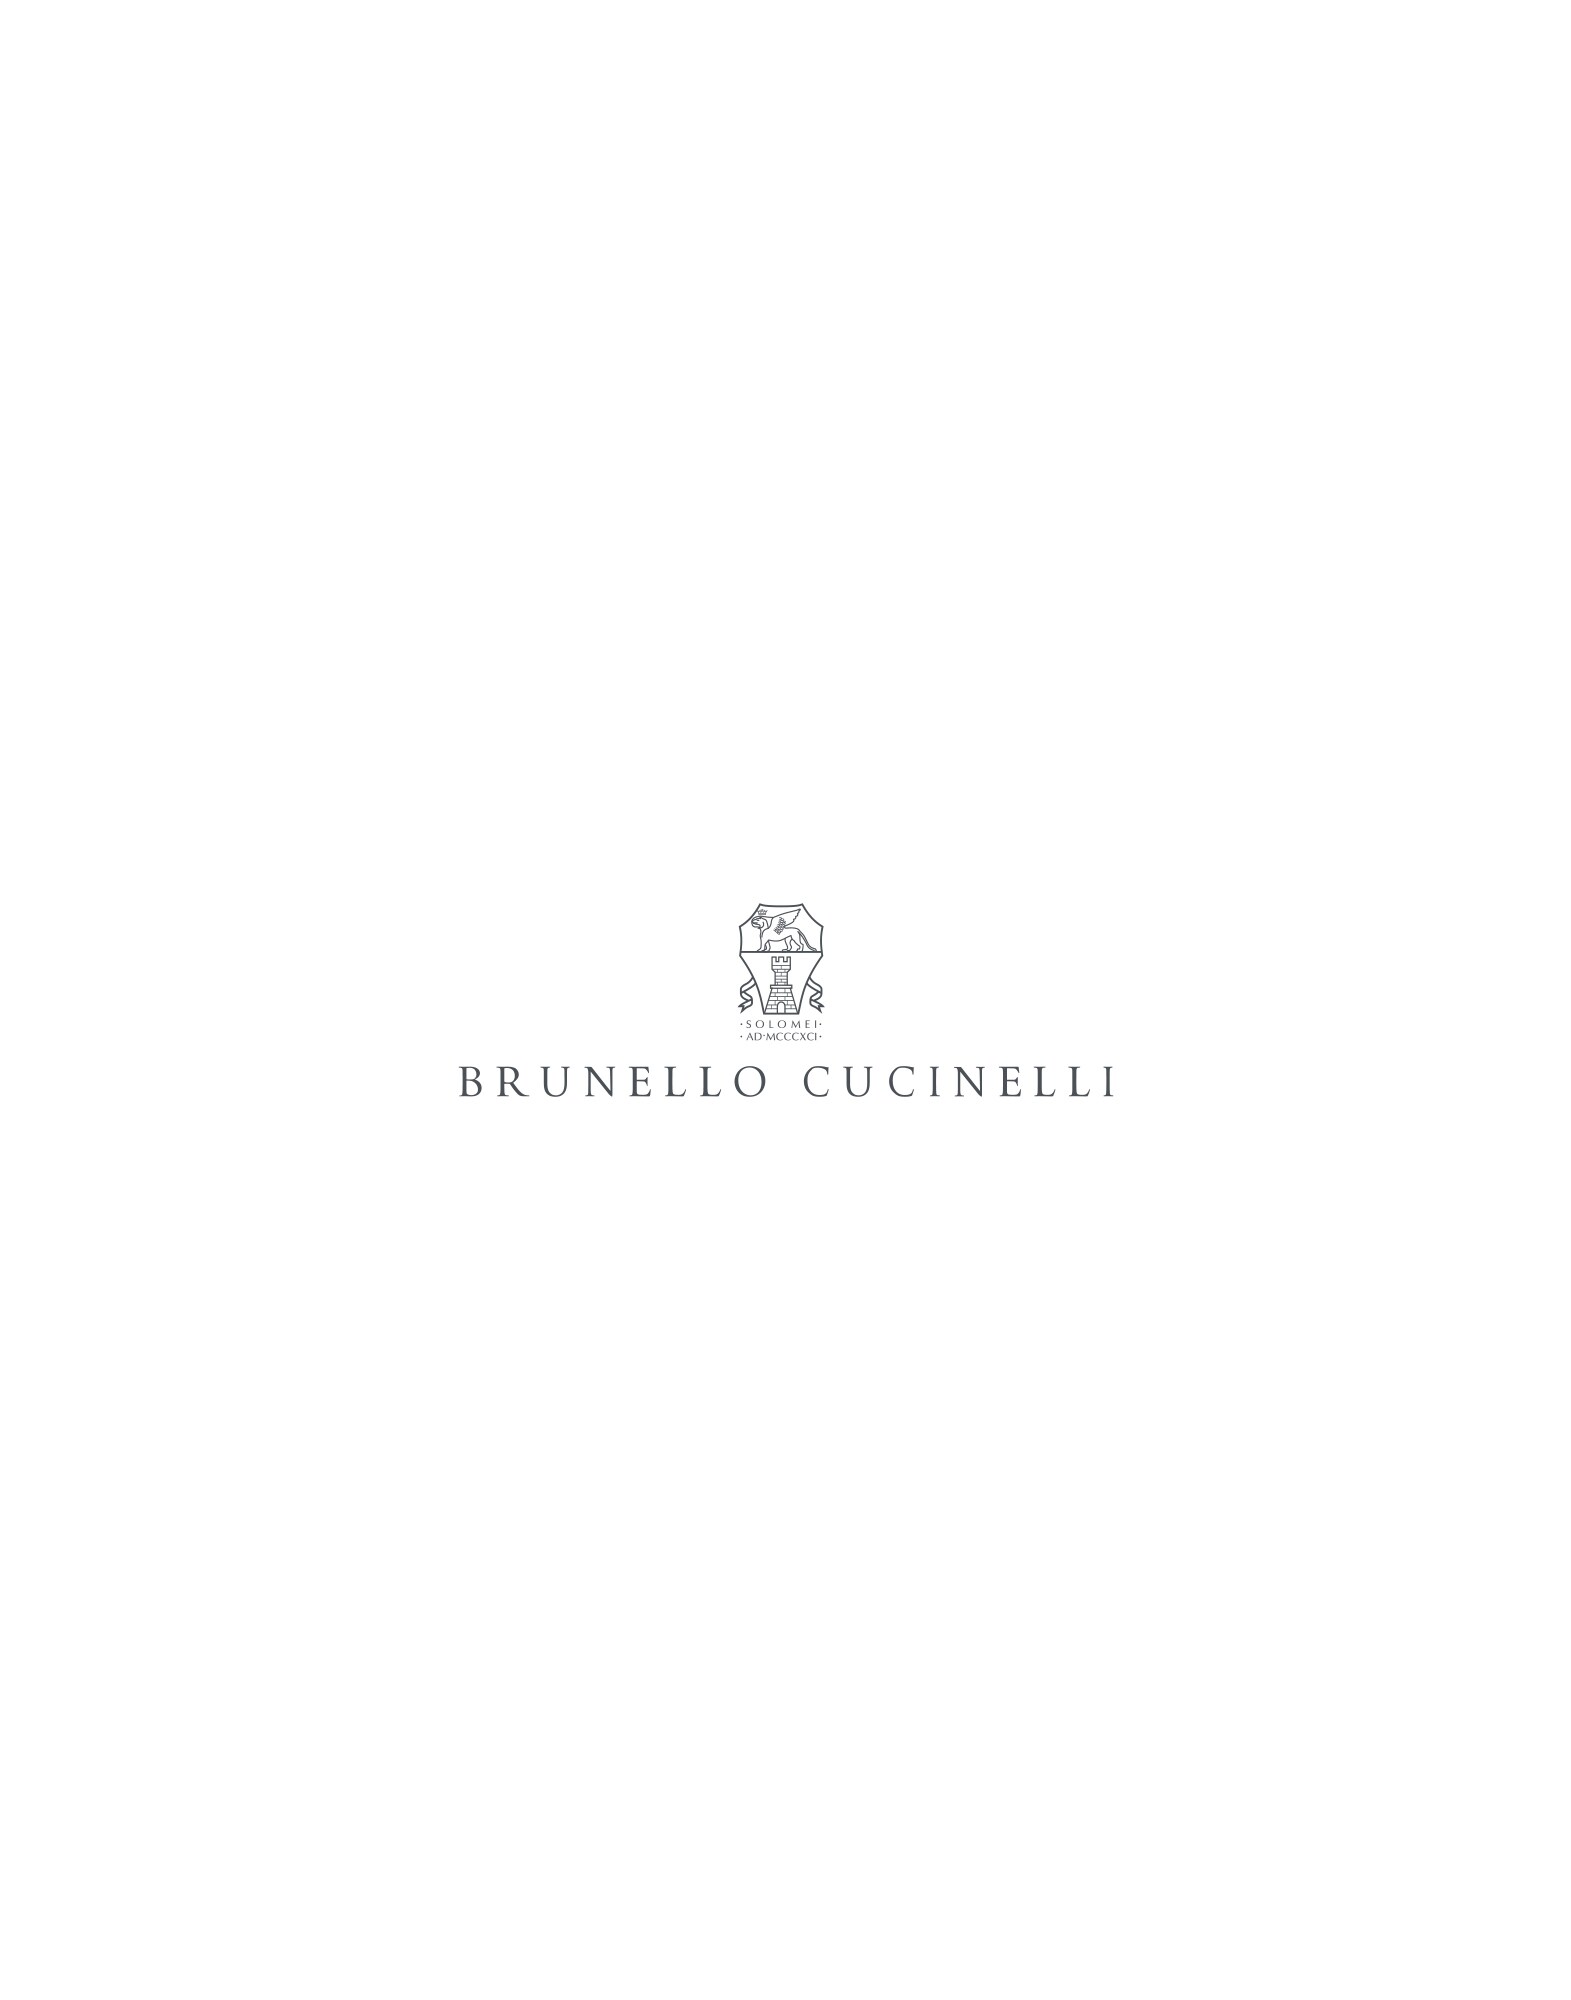 Blazer-style outerwear Blue Man -
                        Brunello Cucinelli 